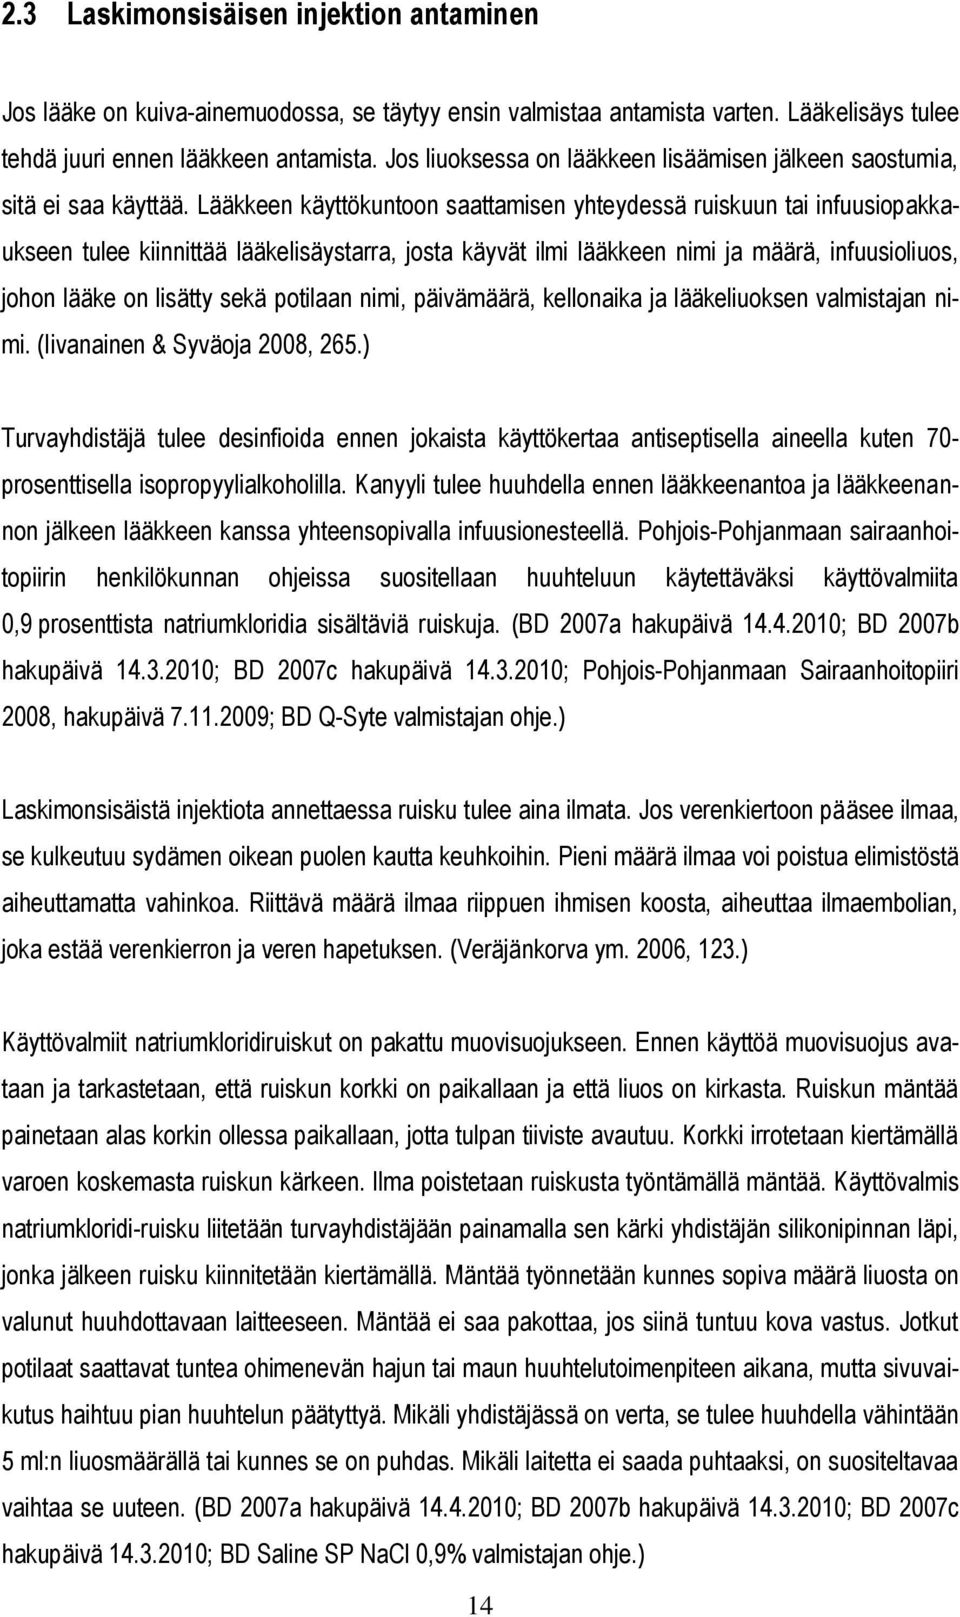 LÄÄKKEEN ANTAMINEN LASKIMONSISÄISENÄ INJEKTIONA - PDF Free Download